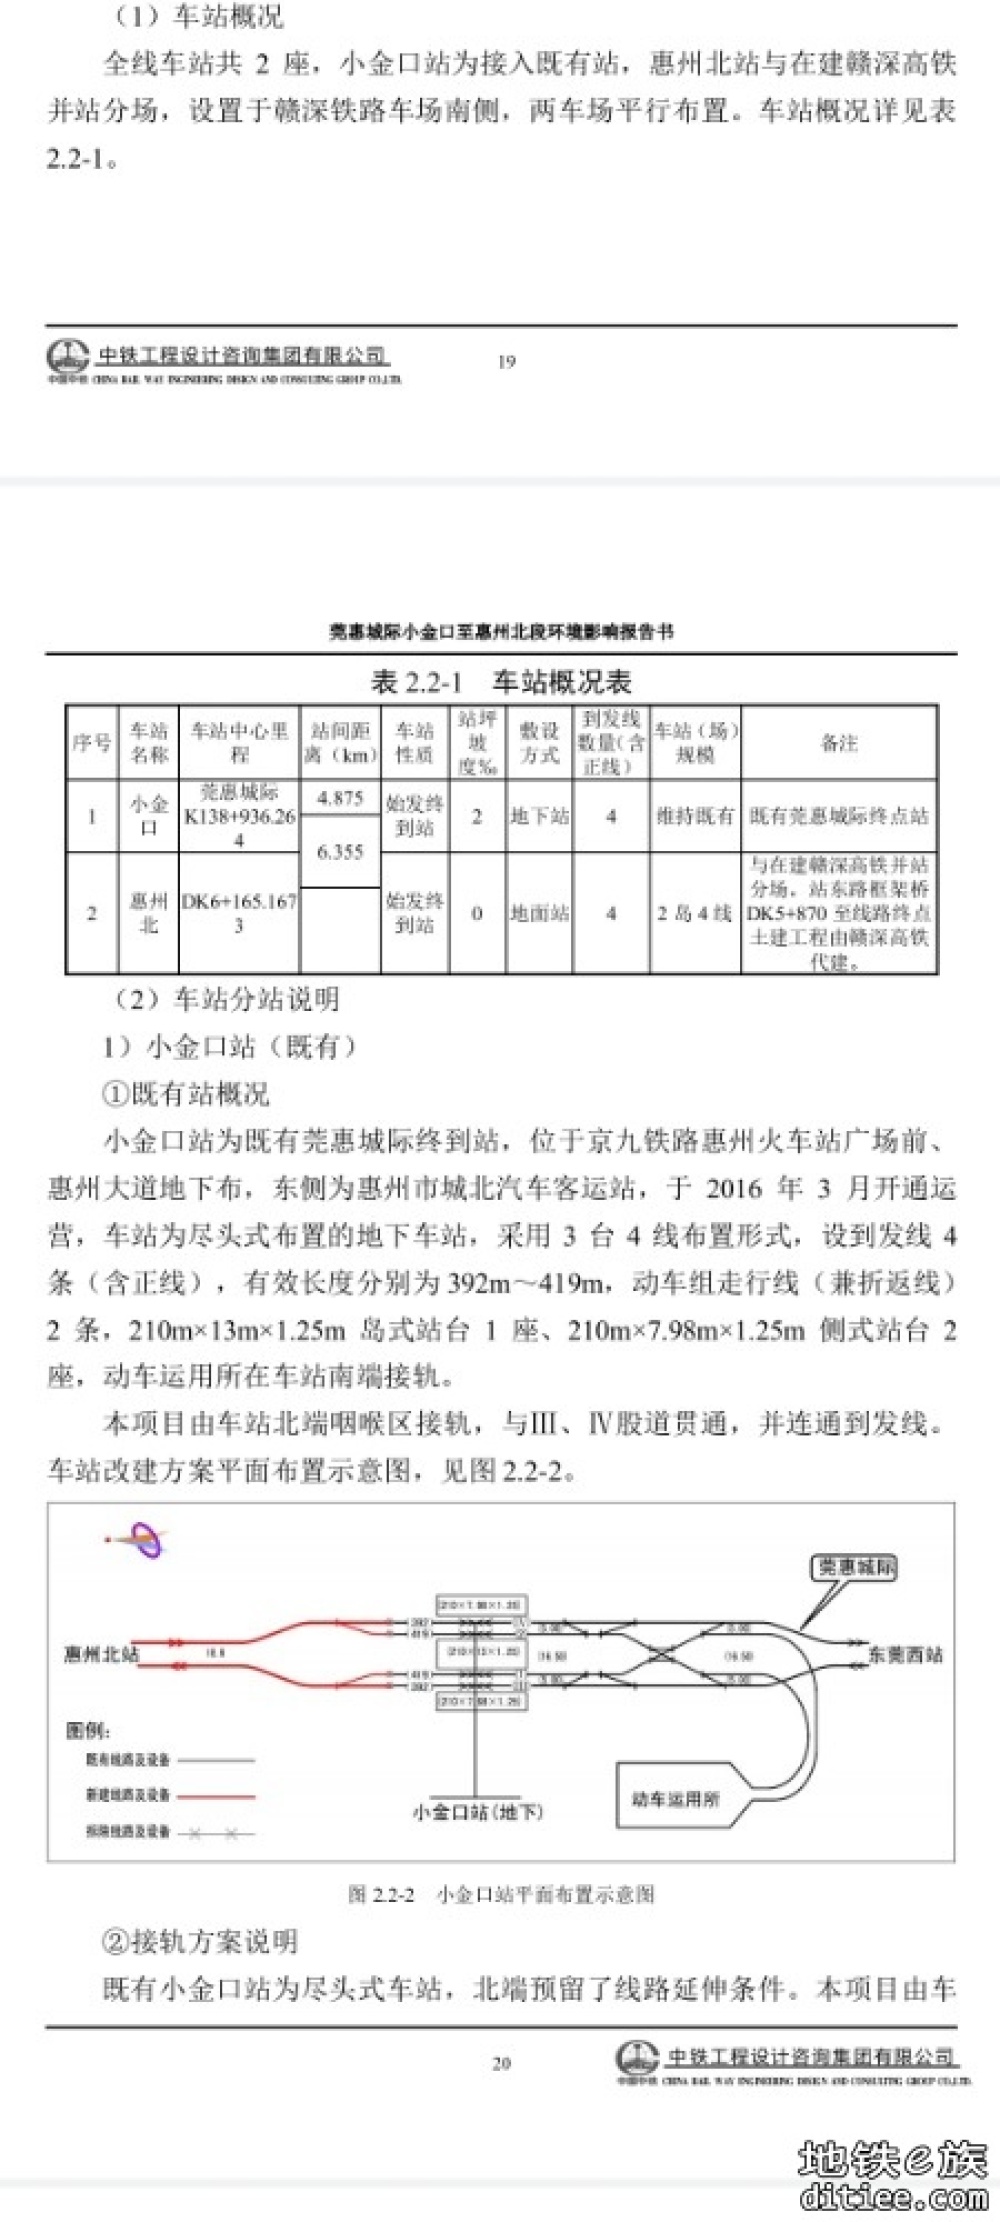 莞惠北延线计划年底运营